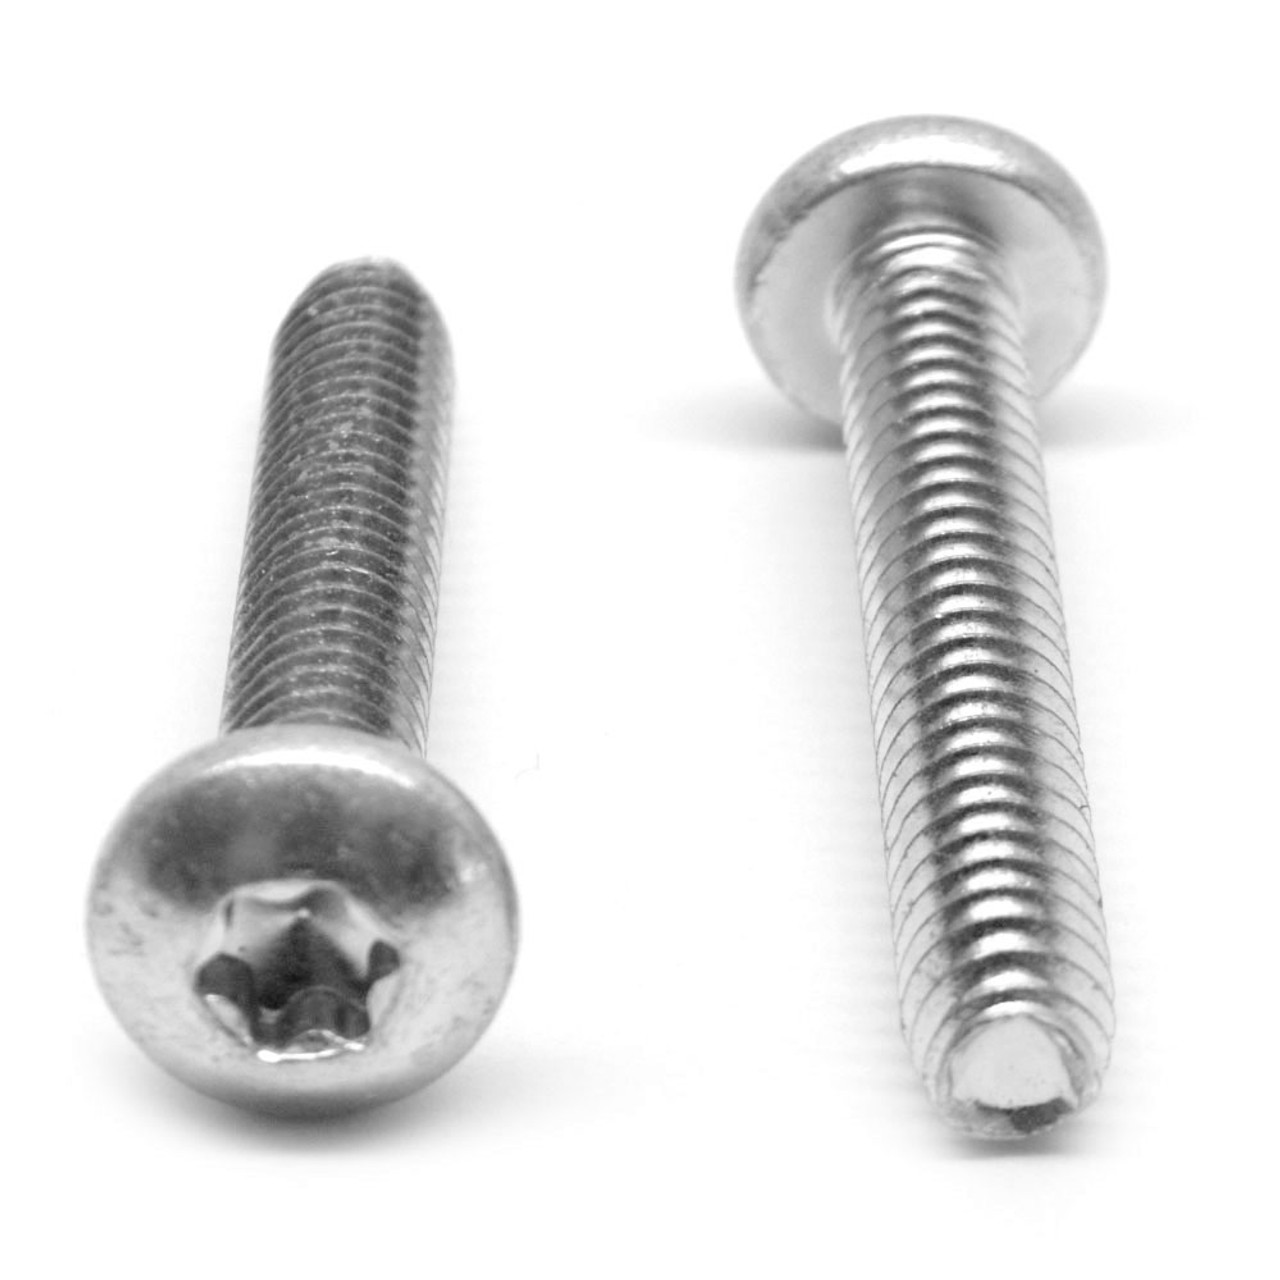 M3 x 0.50 x 8 MM Coarse Thread Thread Rolling Screw 6 Lobe Pan Head Stainless Steel 18-8 Wax